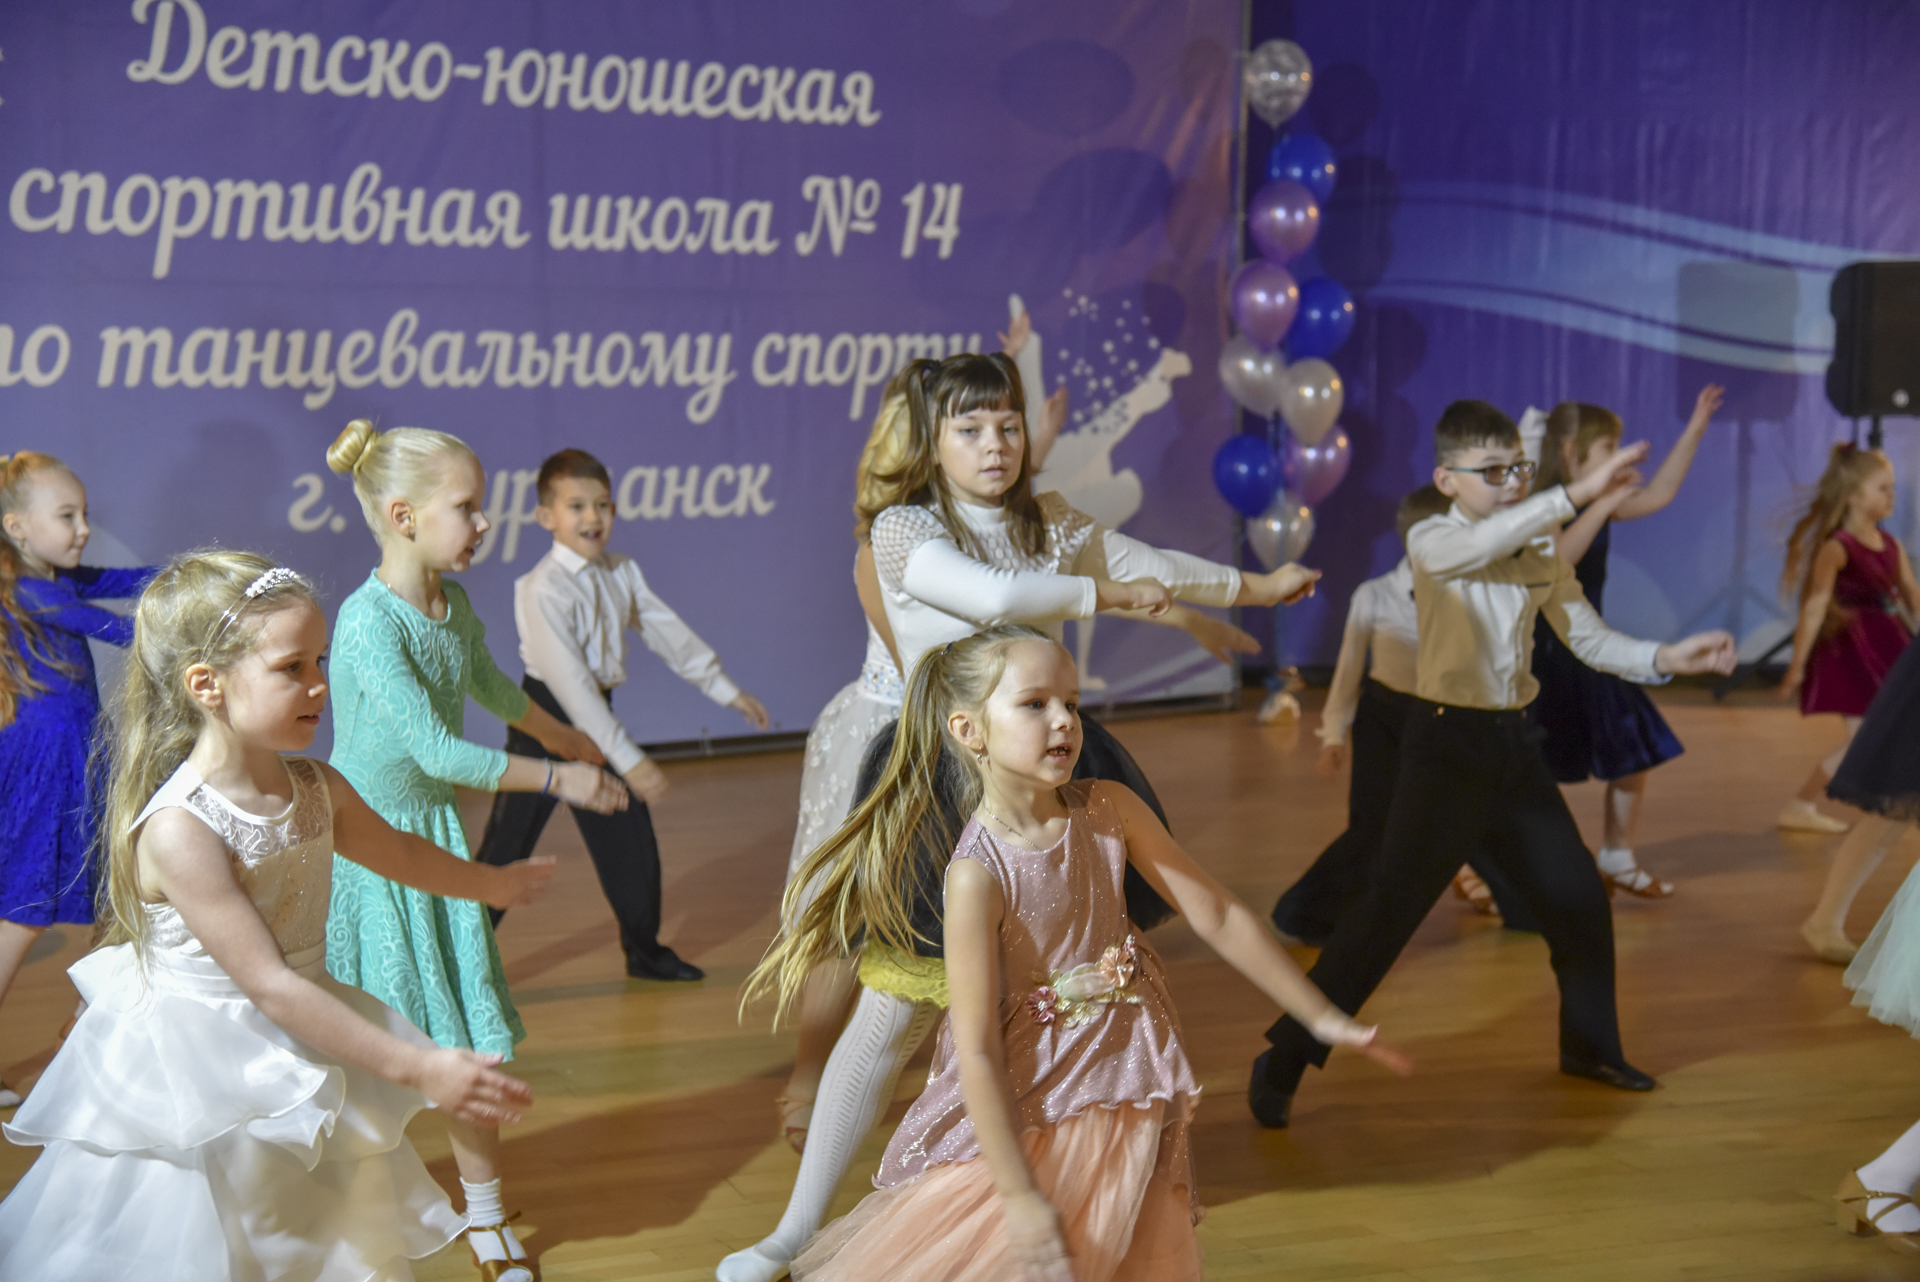 Мурманская школа по танцевальному спорту отметила юбилей